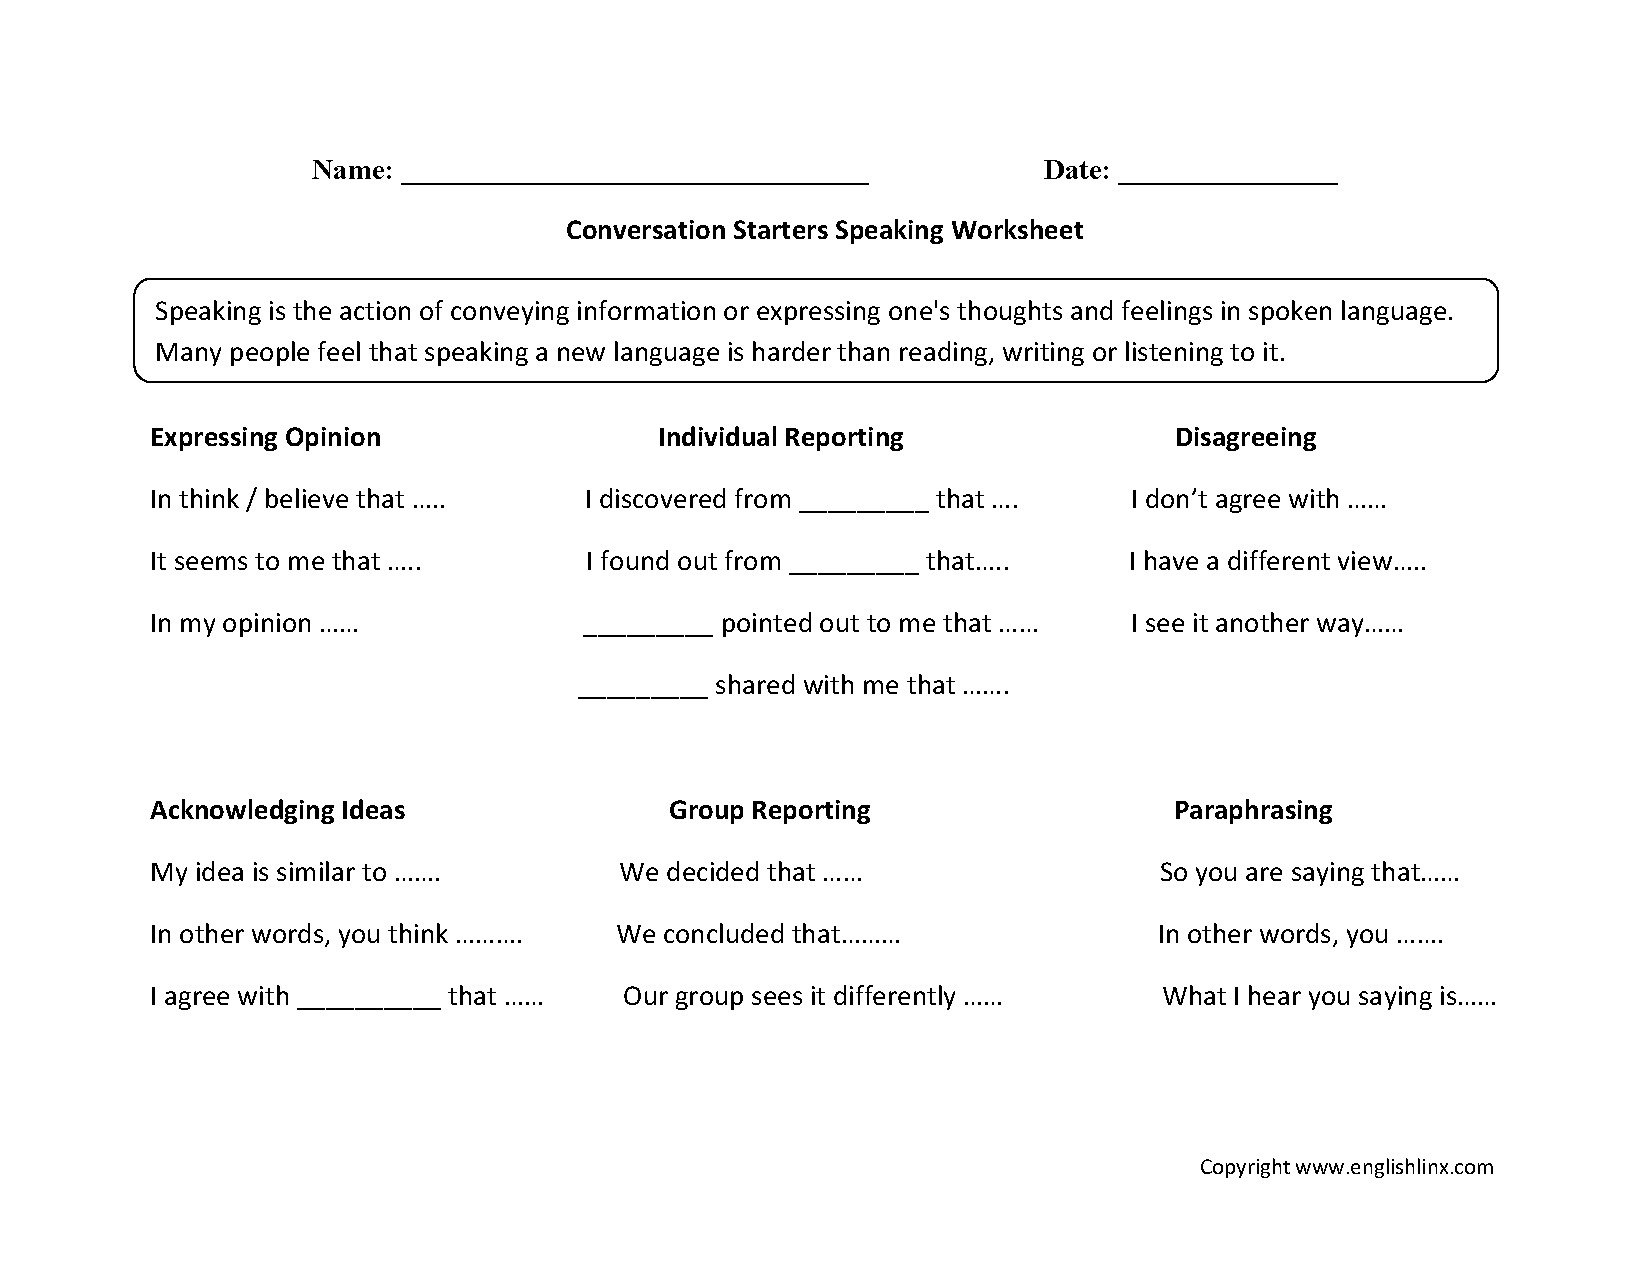 Englishlinx | Speaking Worksheets - Free Printable English Conversation Worksheets